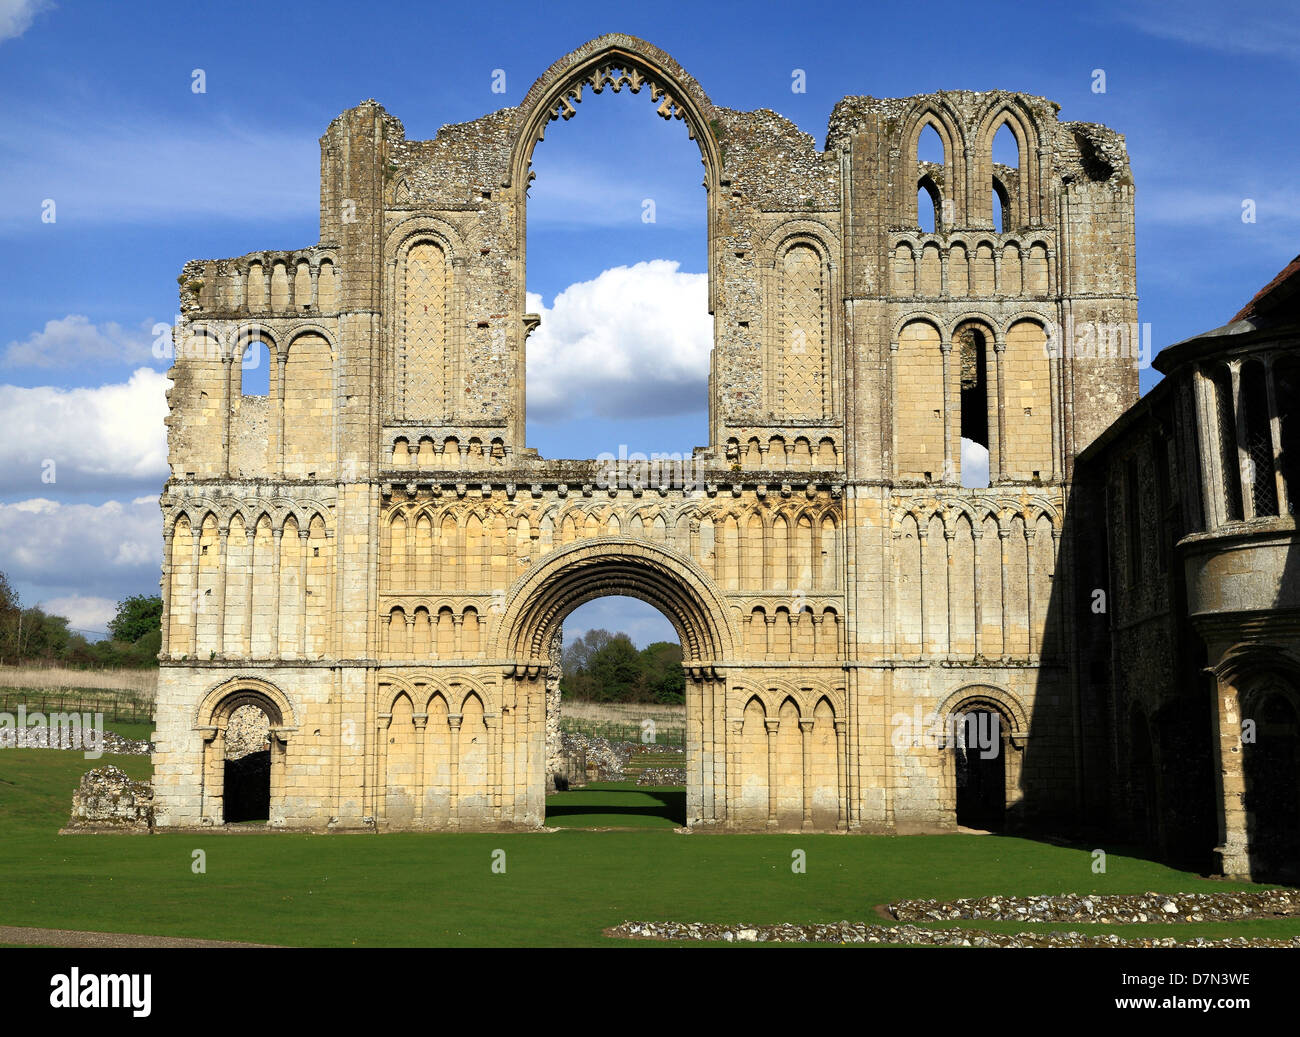 Castle Acre Prieuré, Norfolk, à l'ouest de l'église prieurale de l'avant, en Angleterre, Royaume-Uni, l'architecture romane normande, prieurés anglais, ruines Banque D'Images